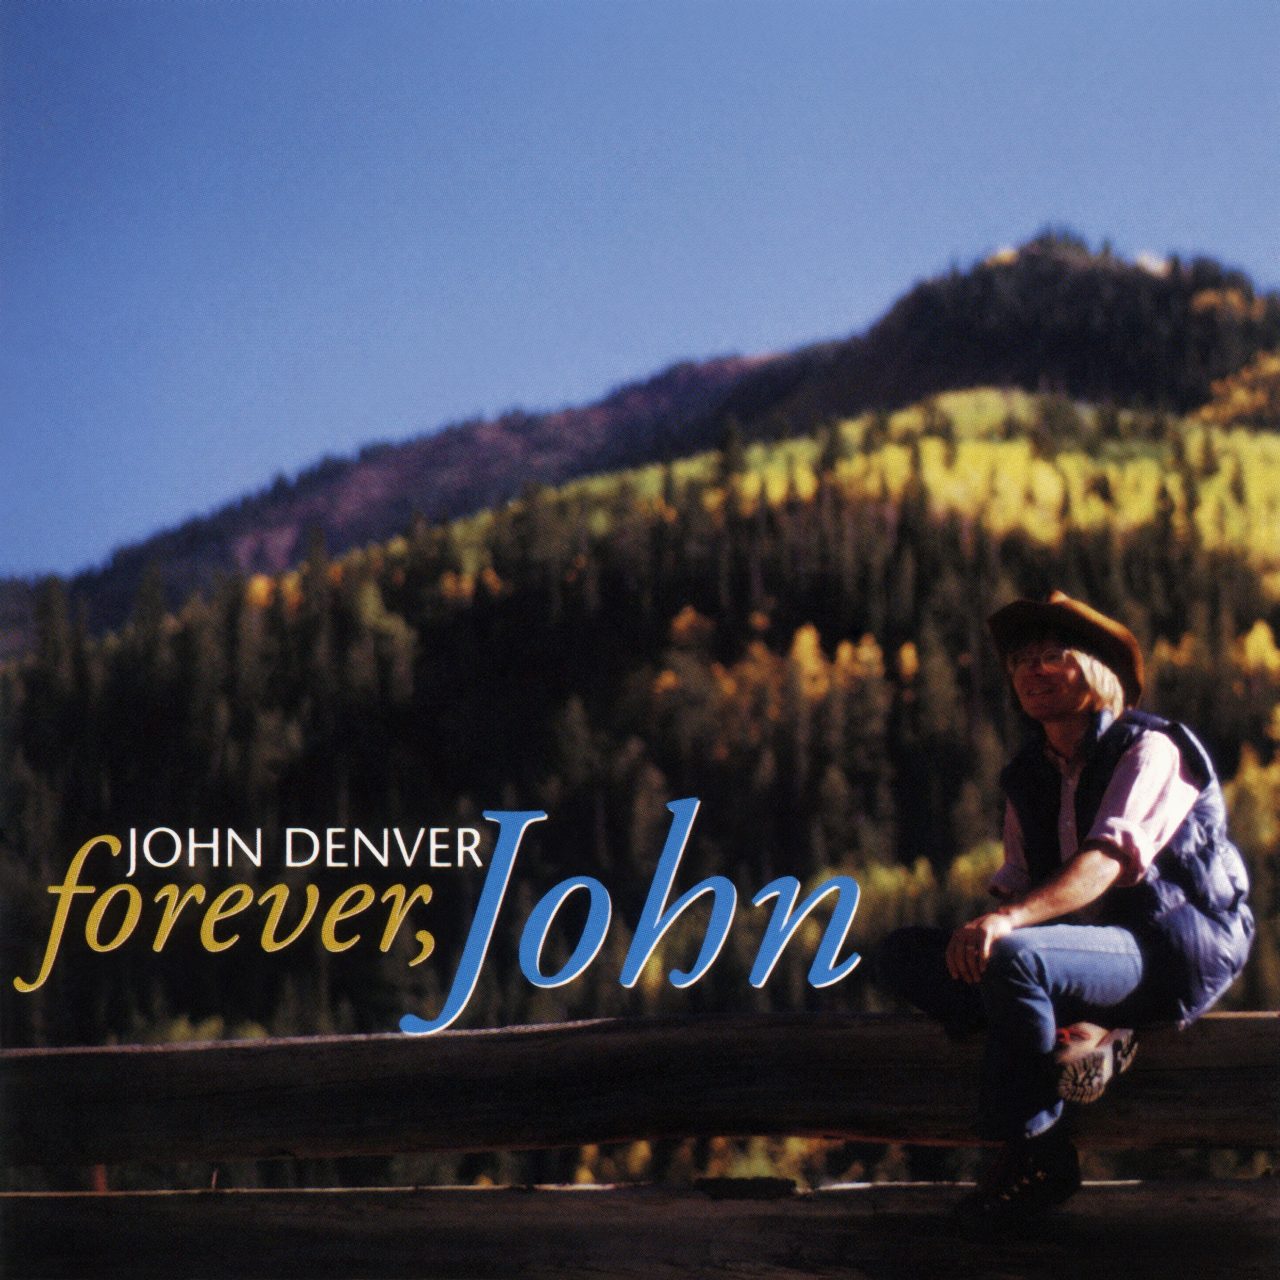 John Denver – Forever, John cover album